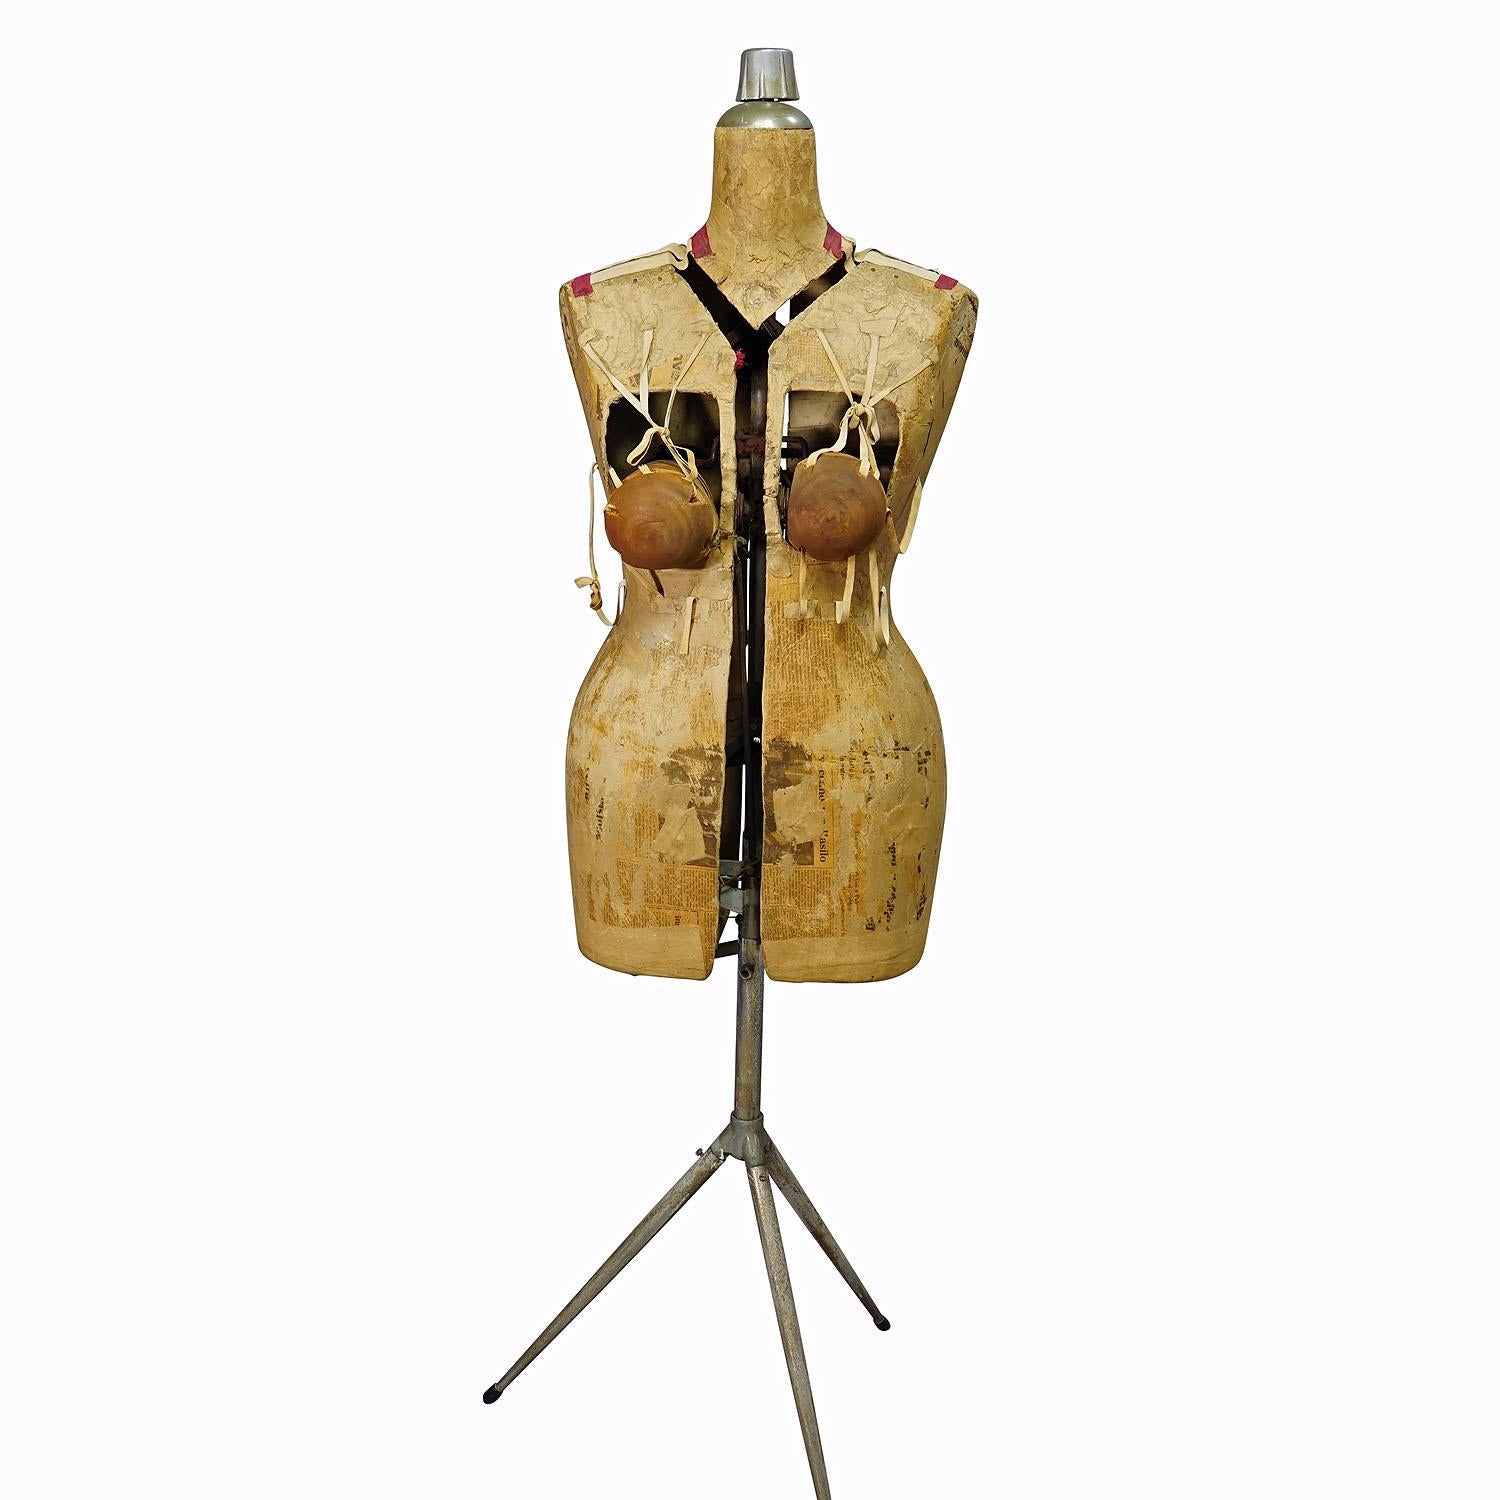 Französischer Matrosen-Mannequin, frühes 20. Jahrhundert

Französische Schneiderpuppe des 20. Jahrhunderts. Hergestellt aus Papier, Stoff und Metall. Im Inneren befindet sich ein Mechanismus, mit dem der Schneider die Schaufensterpuppe auf